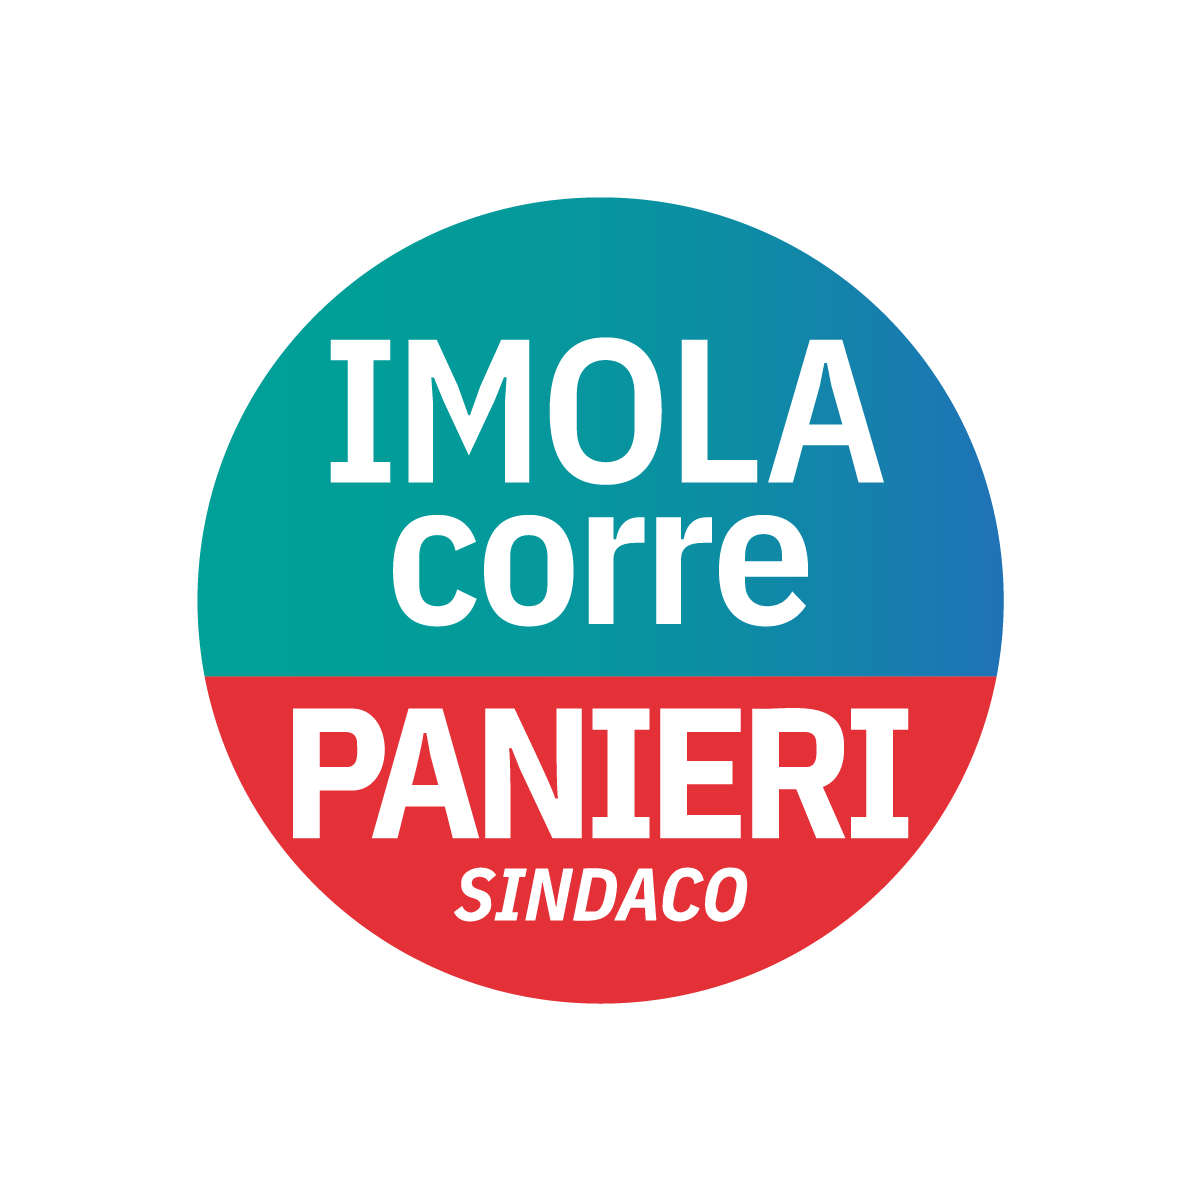 Marco Panieri | Campagna elettorale | Agenzia ORA